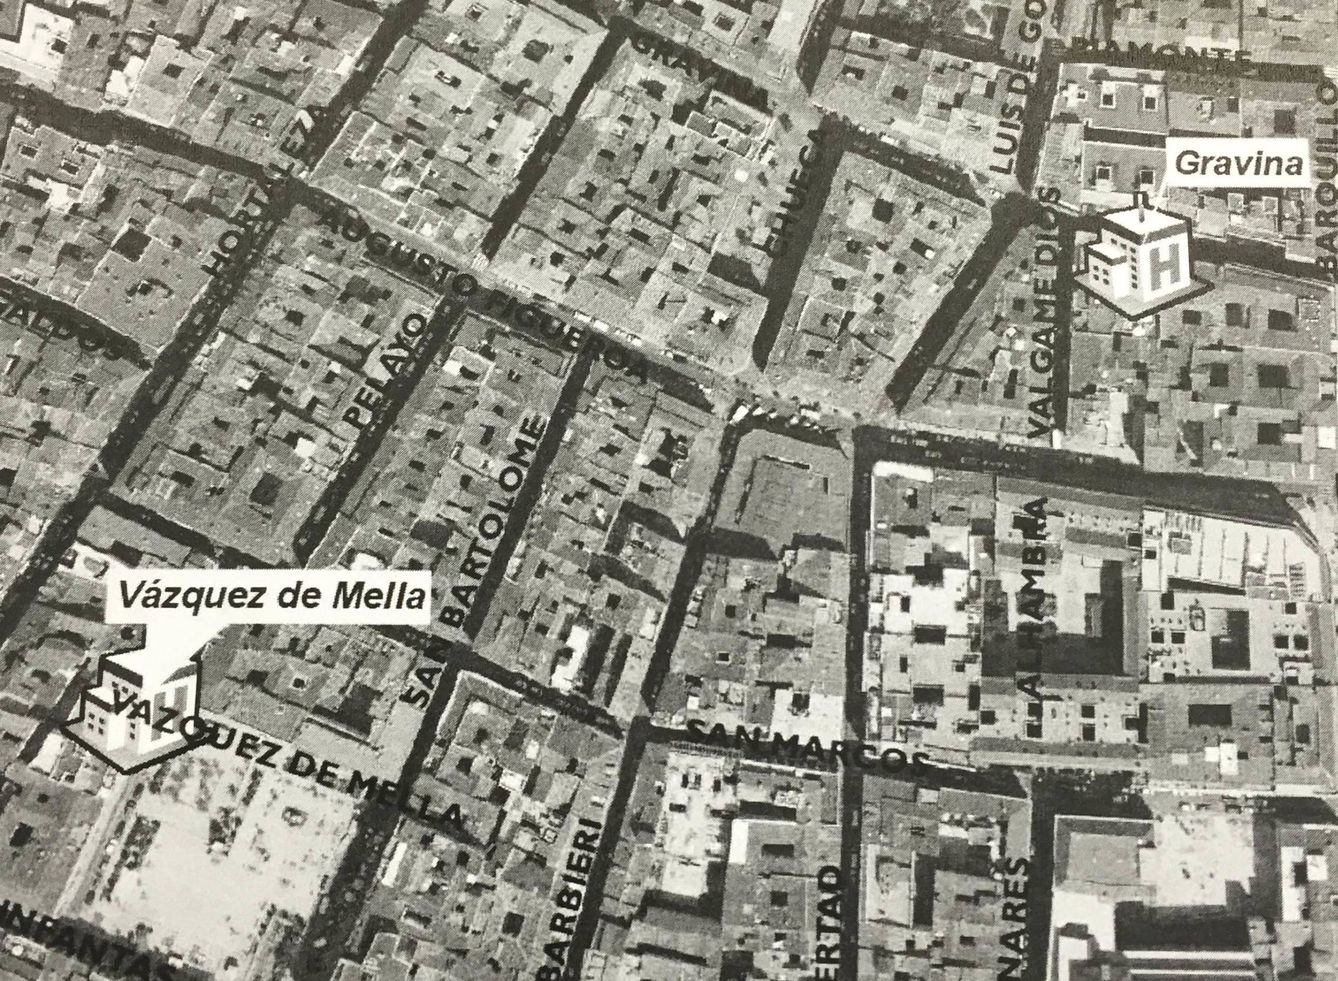 Centros de mayores junto a la plaza de Chueca y de Pedro Zerolo (informe del ingeniero Eugenio García-Calderón Montejo).